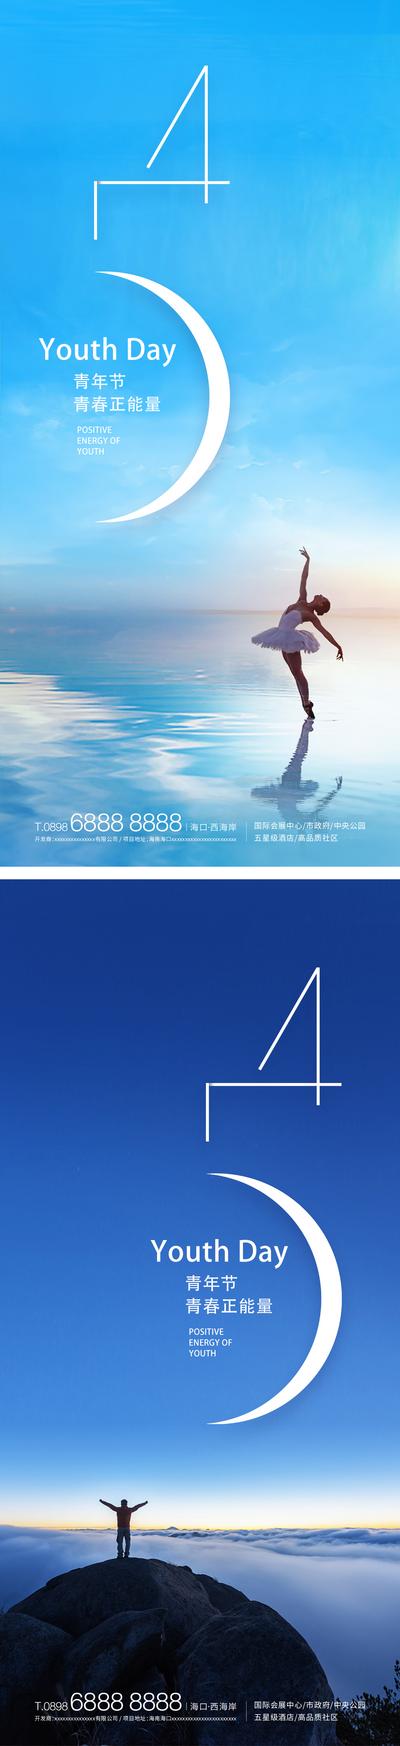 南门网 海报 地产 公历节日 青年节 五四 54 海景 系列 数字 简约